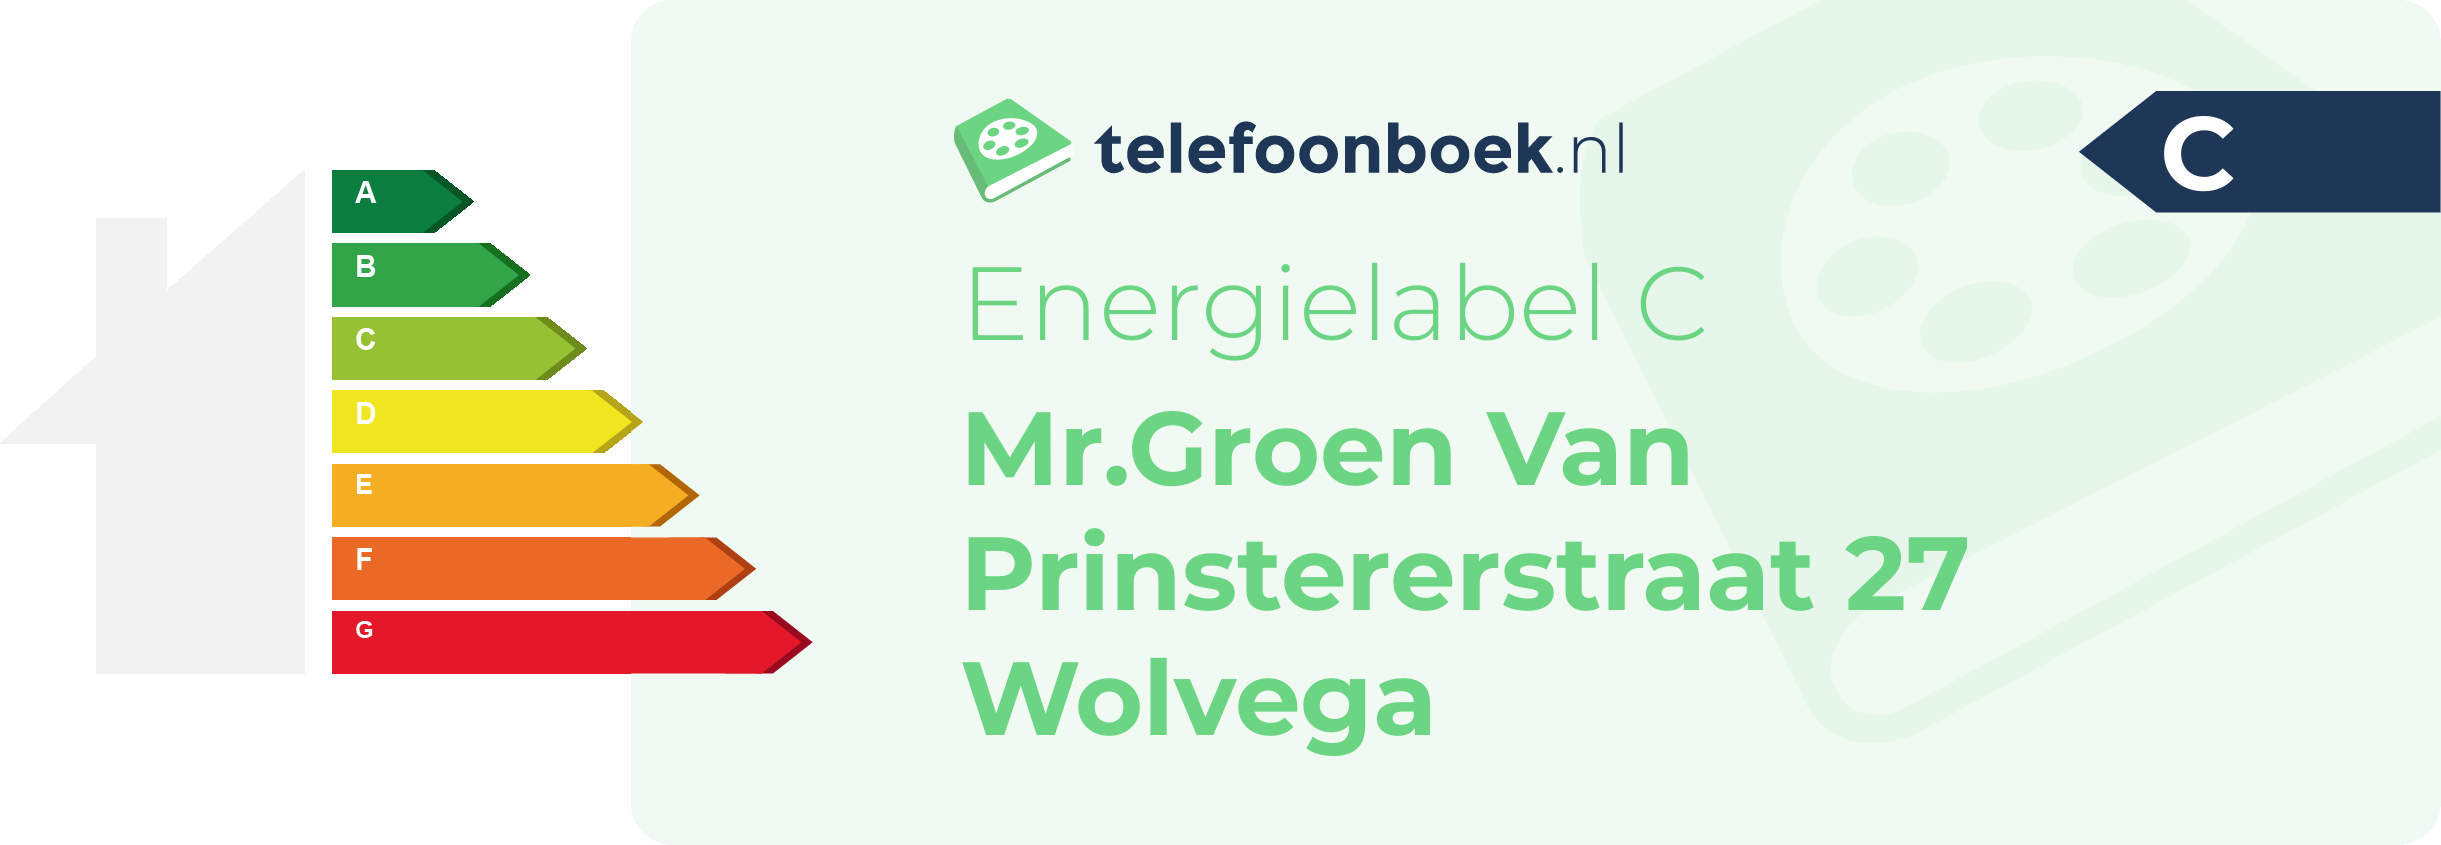 Energielabel Mr.Groen Van Prinstererstraat 27 Wolvega